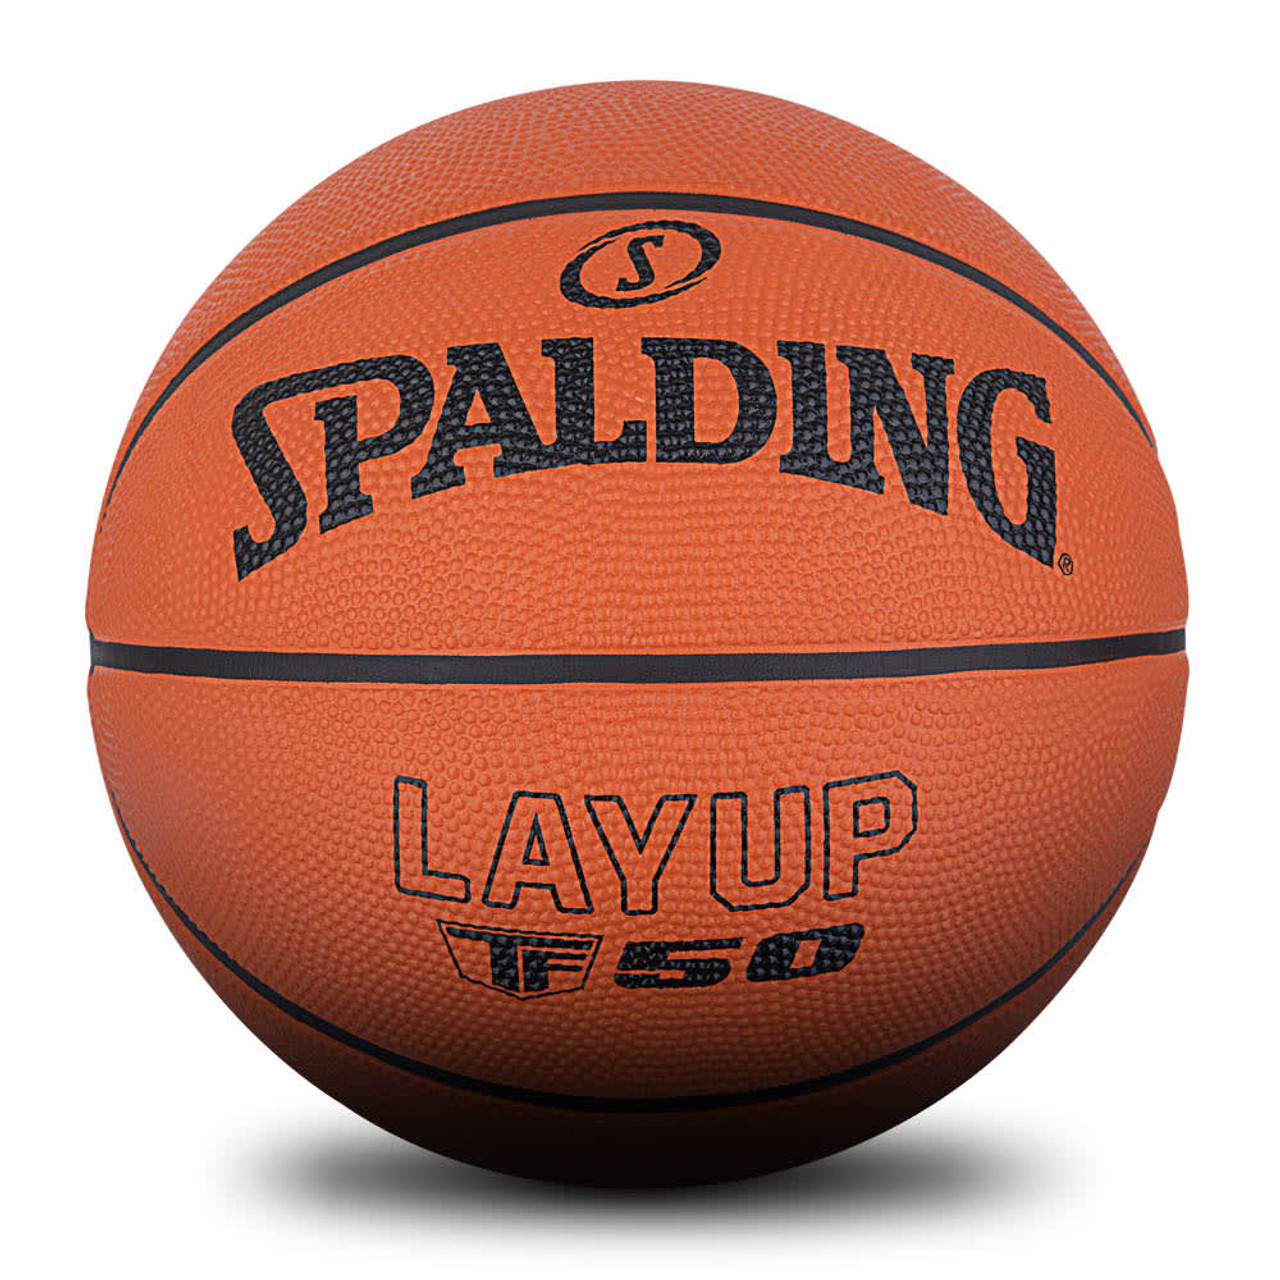 Spalding LAYUP TF50 TF-50 Outdoor Rubber Basketball - Basketball Republic